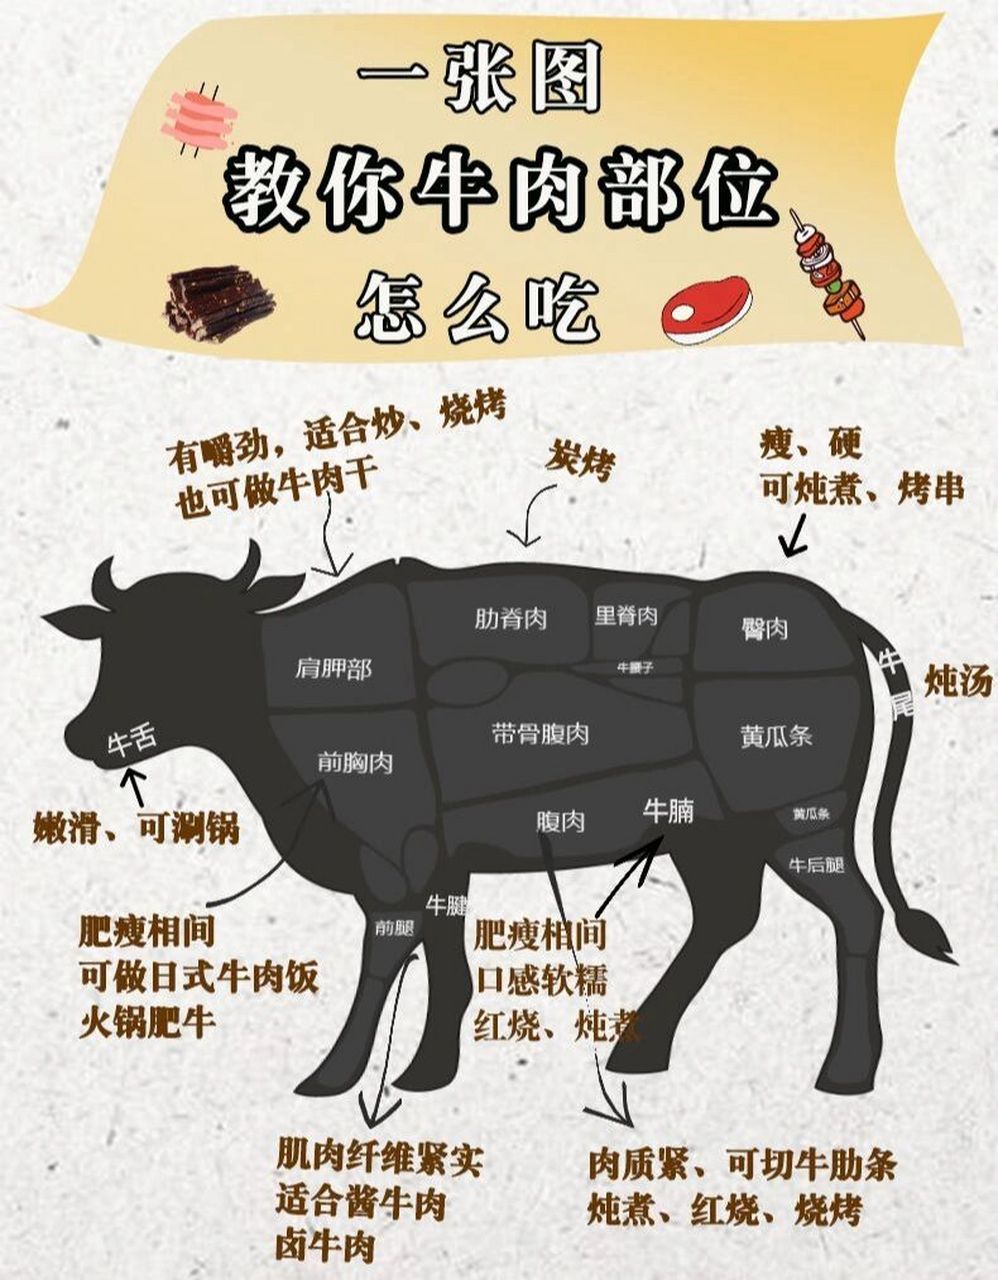 【最全牛肉攻略】一张图看懂牛肉部位怎么吃 01哈喽～大家好 68